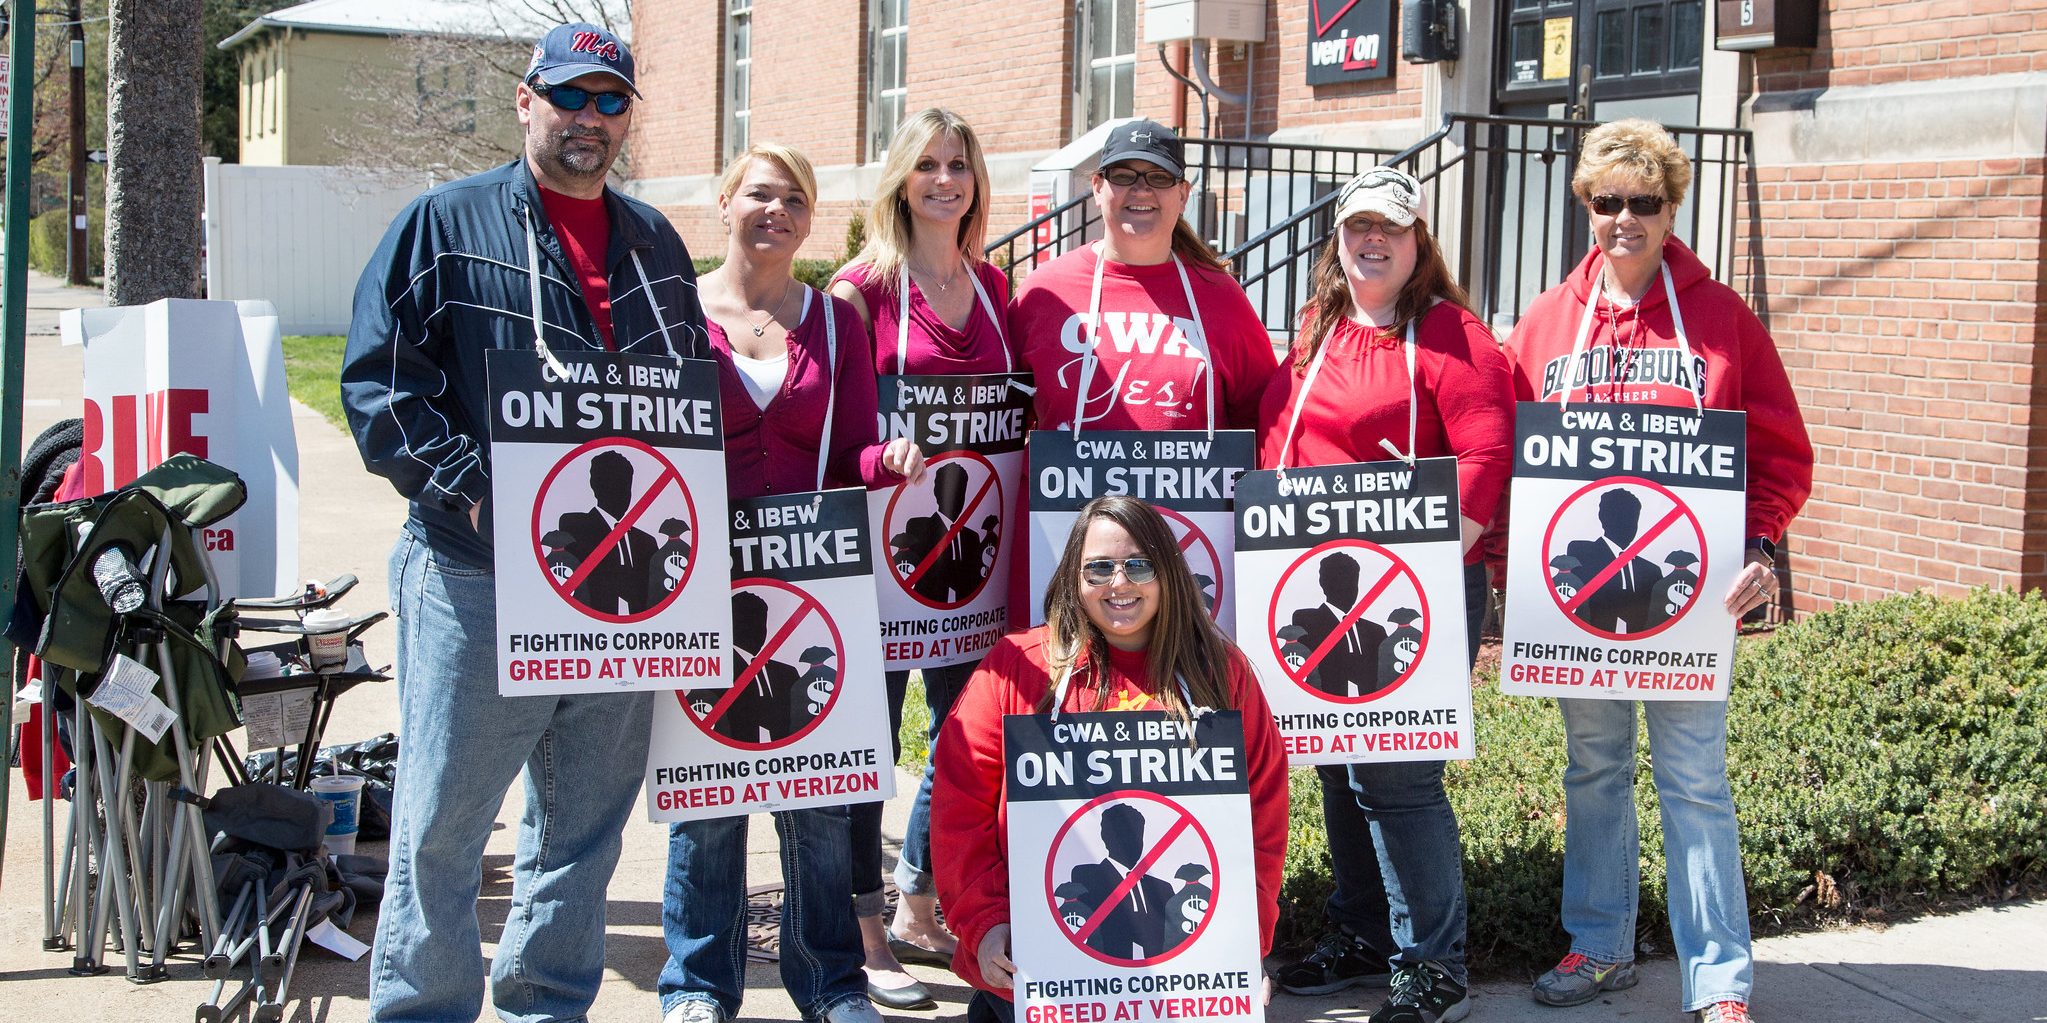 Members of CWA on strike against Verizon in 2016